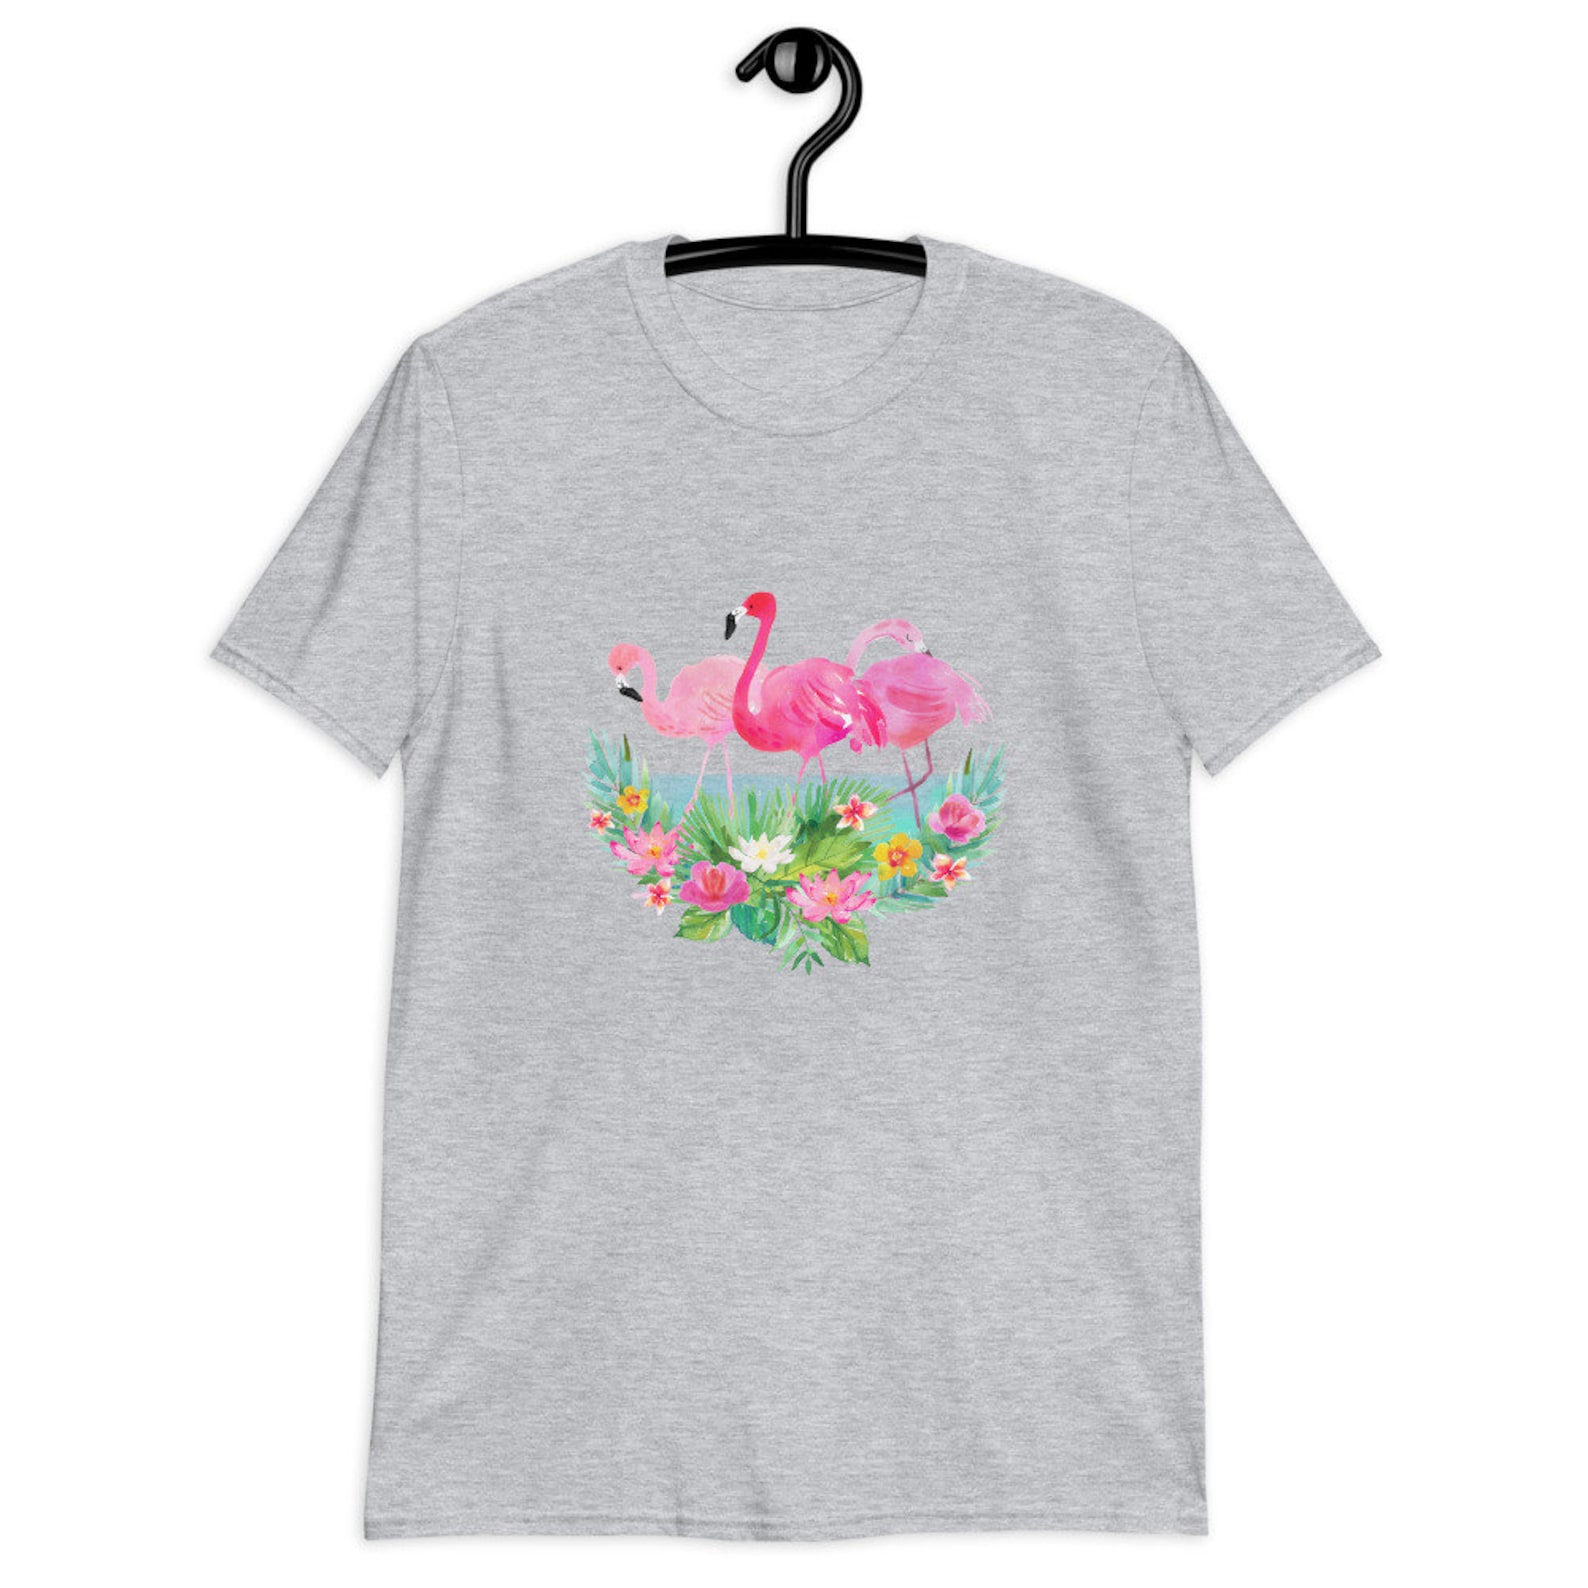 Flamingo Shirt Flamingo T-shirt Flamingo Tee Flamingo Gift - Etsy